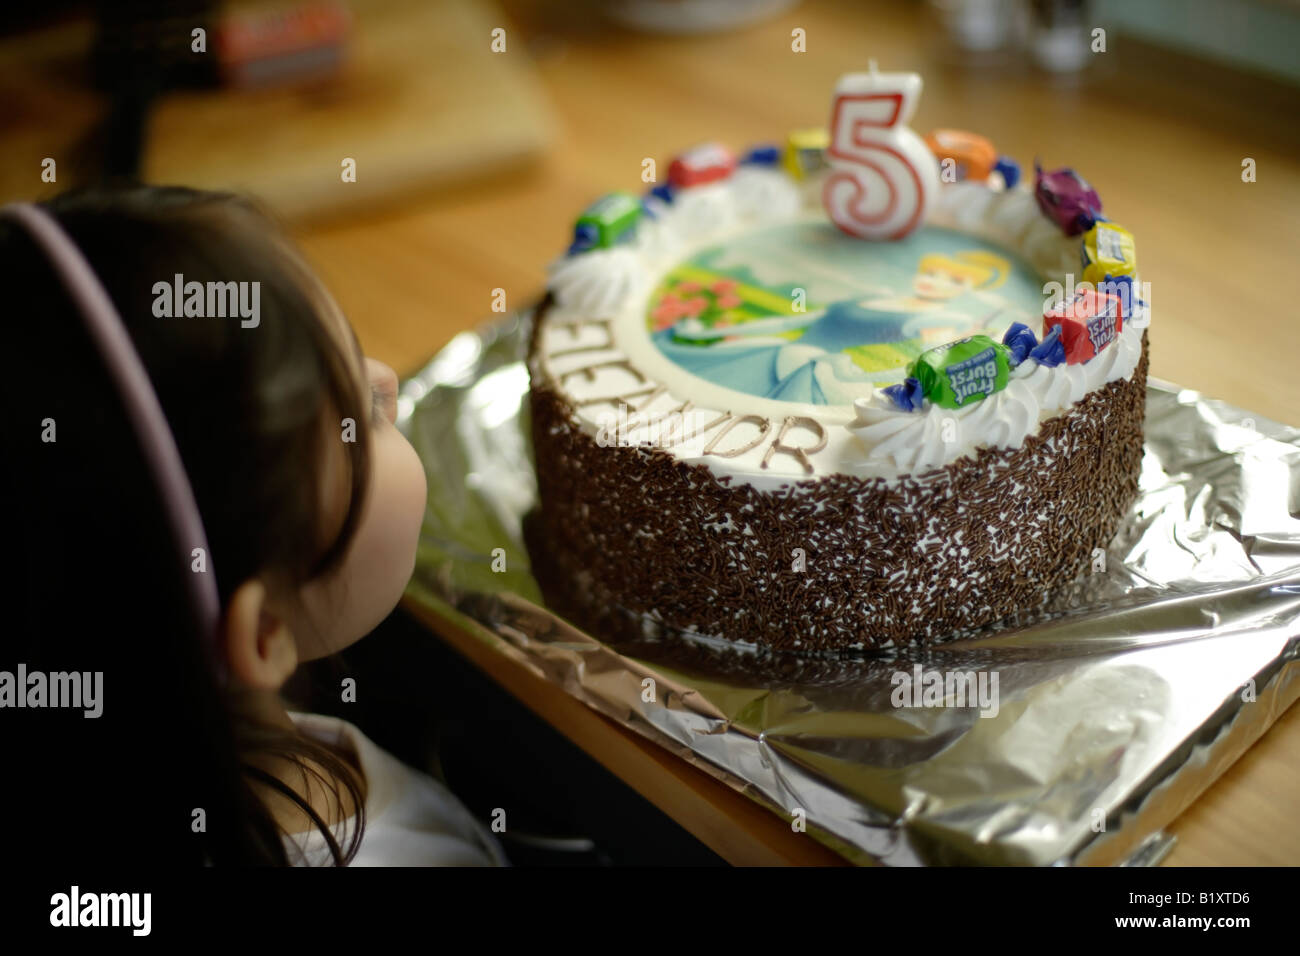 Eleanor schaut ihr Geburtstagskuchen, bevor es an ihrem fünften Geburtstag serviert wird Stockfoto